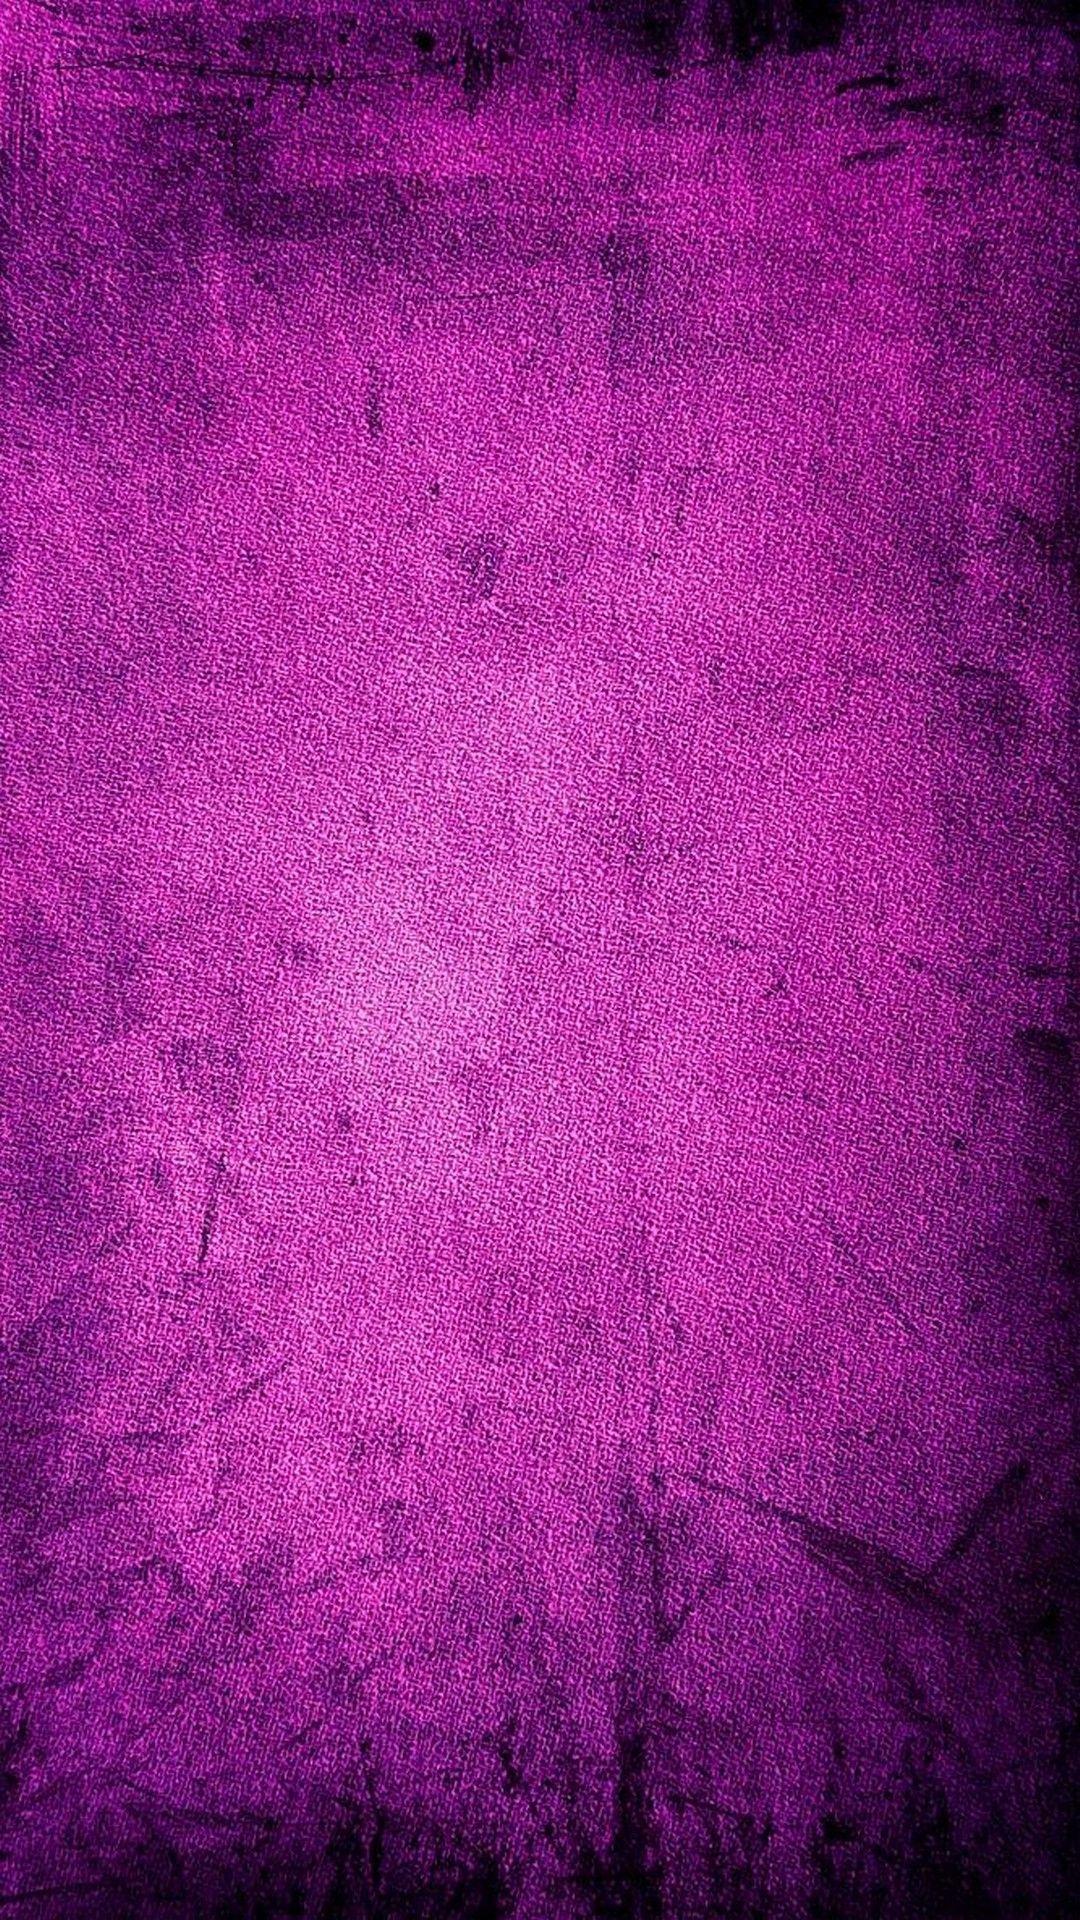 Vintage Purple iPhone Wallpaper Free Vintage Purple